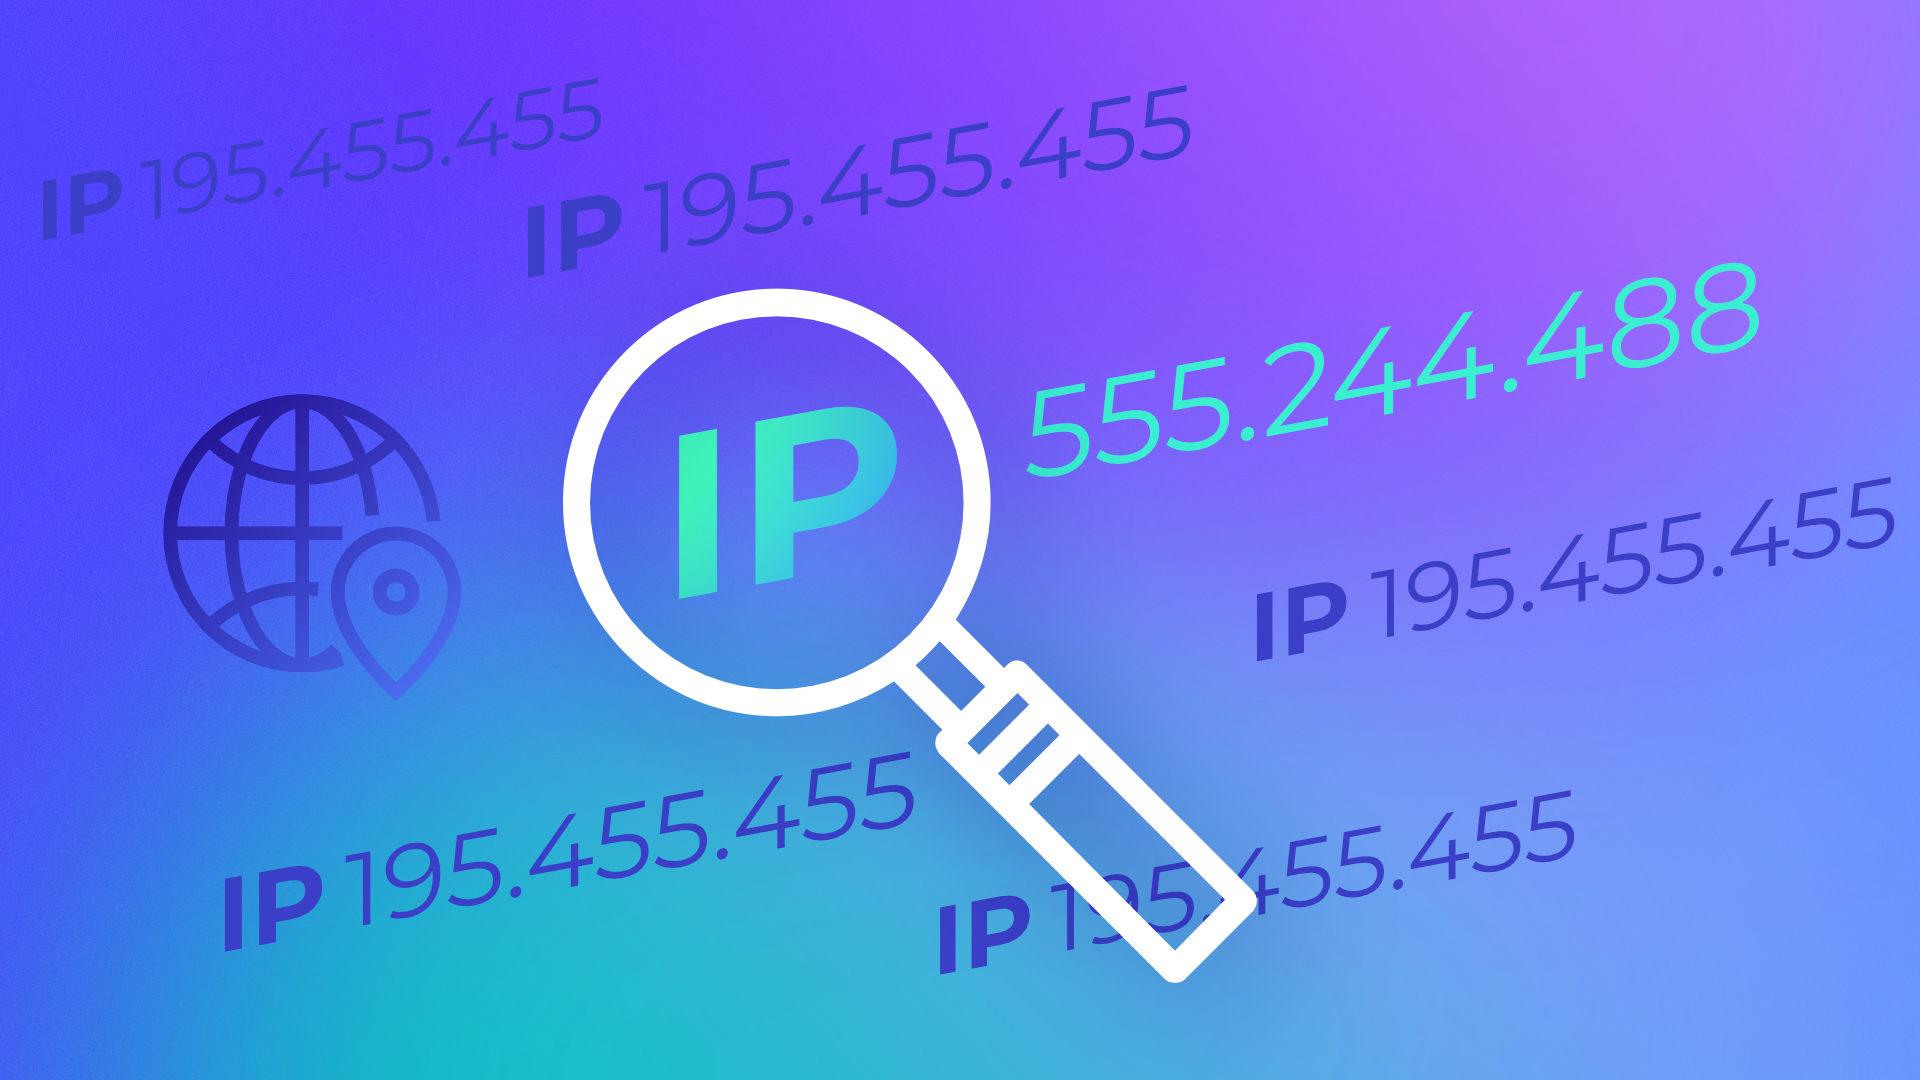 Comment faire pour avoir une adresse IP fixe ?